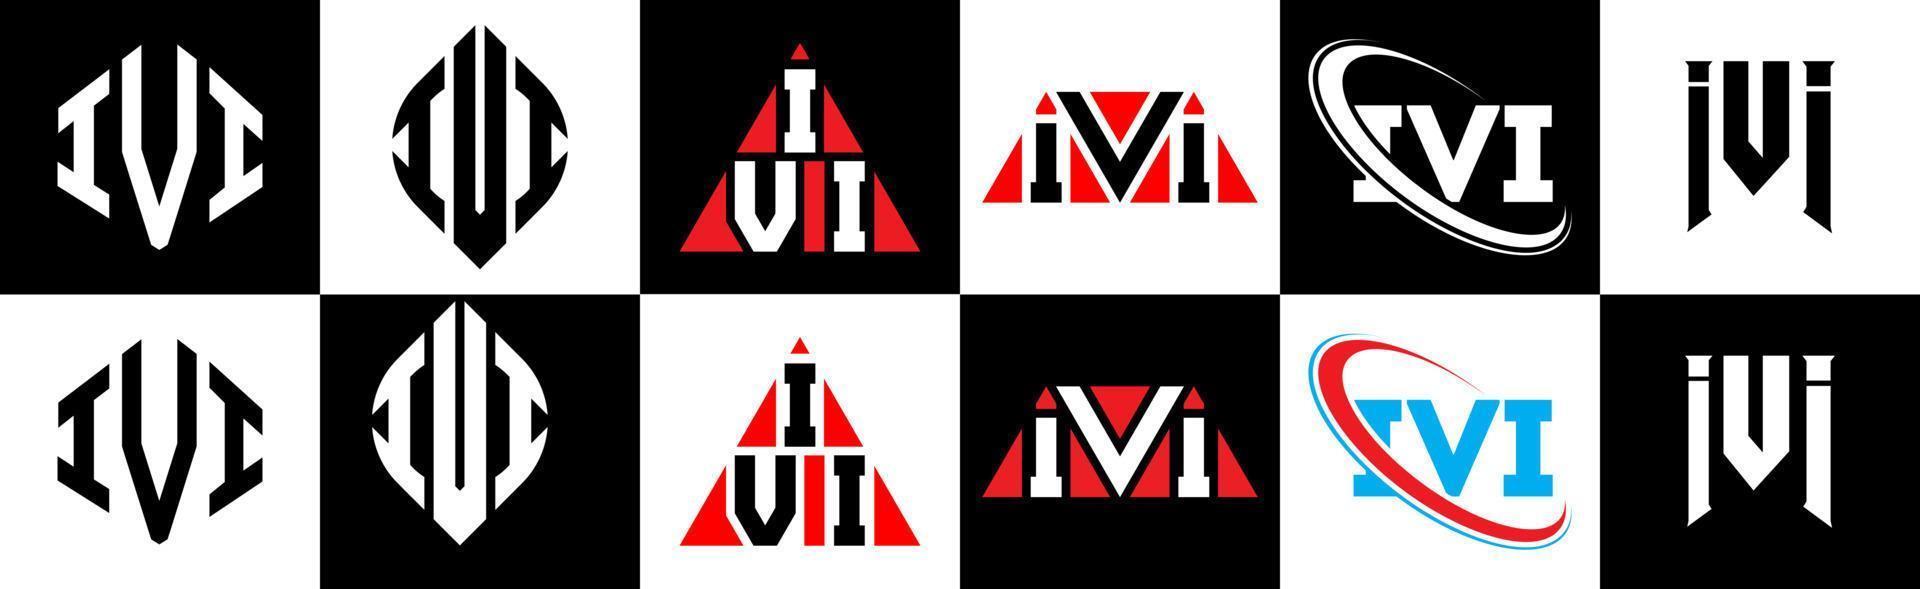 création de logo de lettre ivi en six styles. ivi polygone, cercle, triangle, hexagone, style plat et simple avec logo de lettre de variation de couleur noir et blanc dans un plan de travail. logo minimaliste et classique ivi vecteur